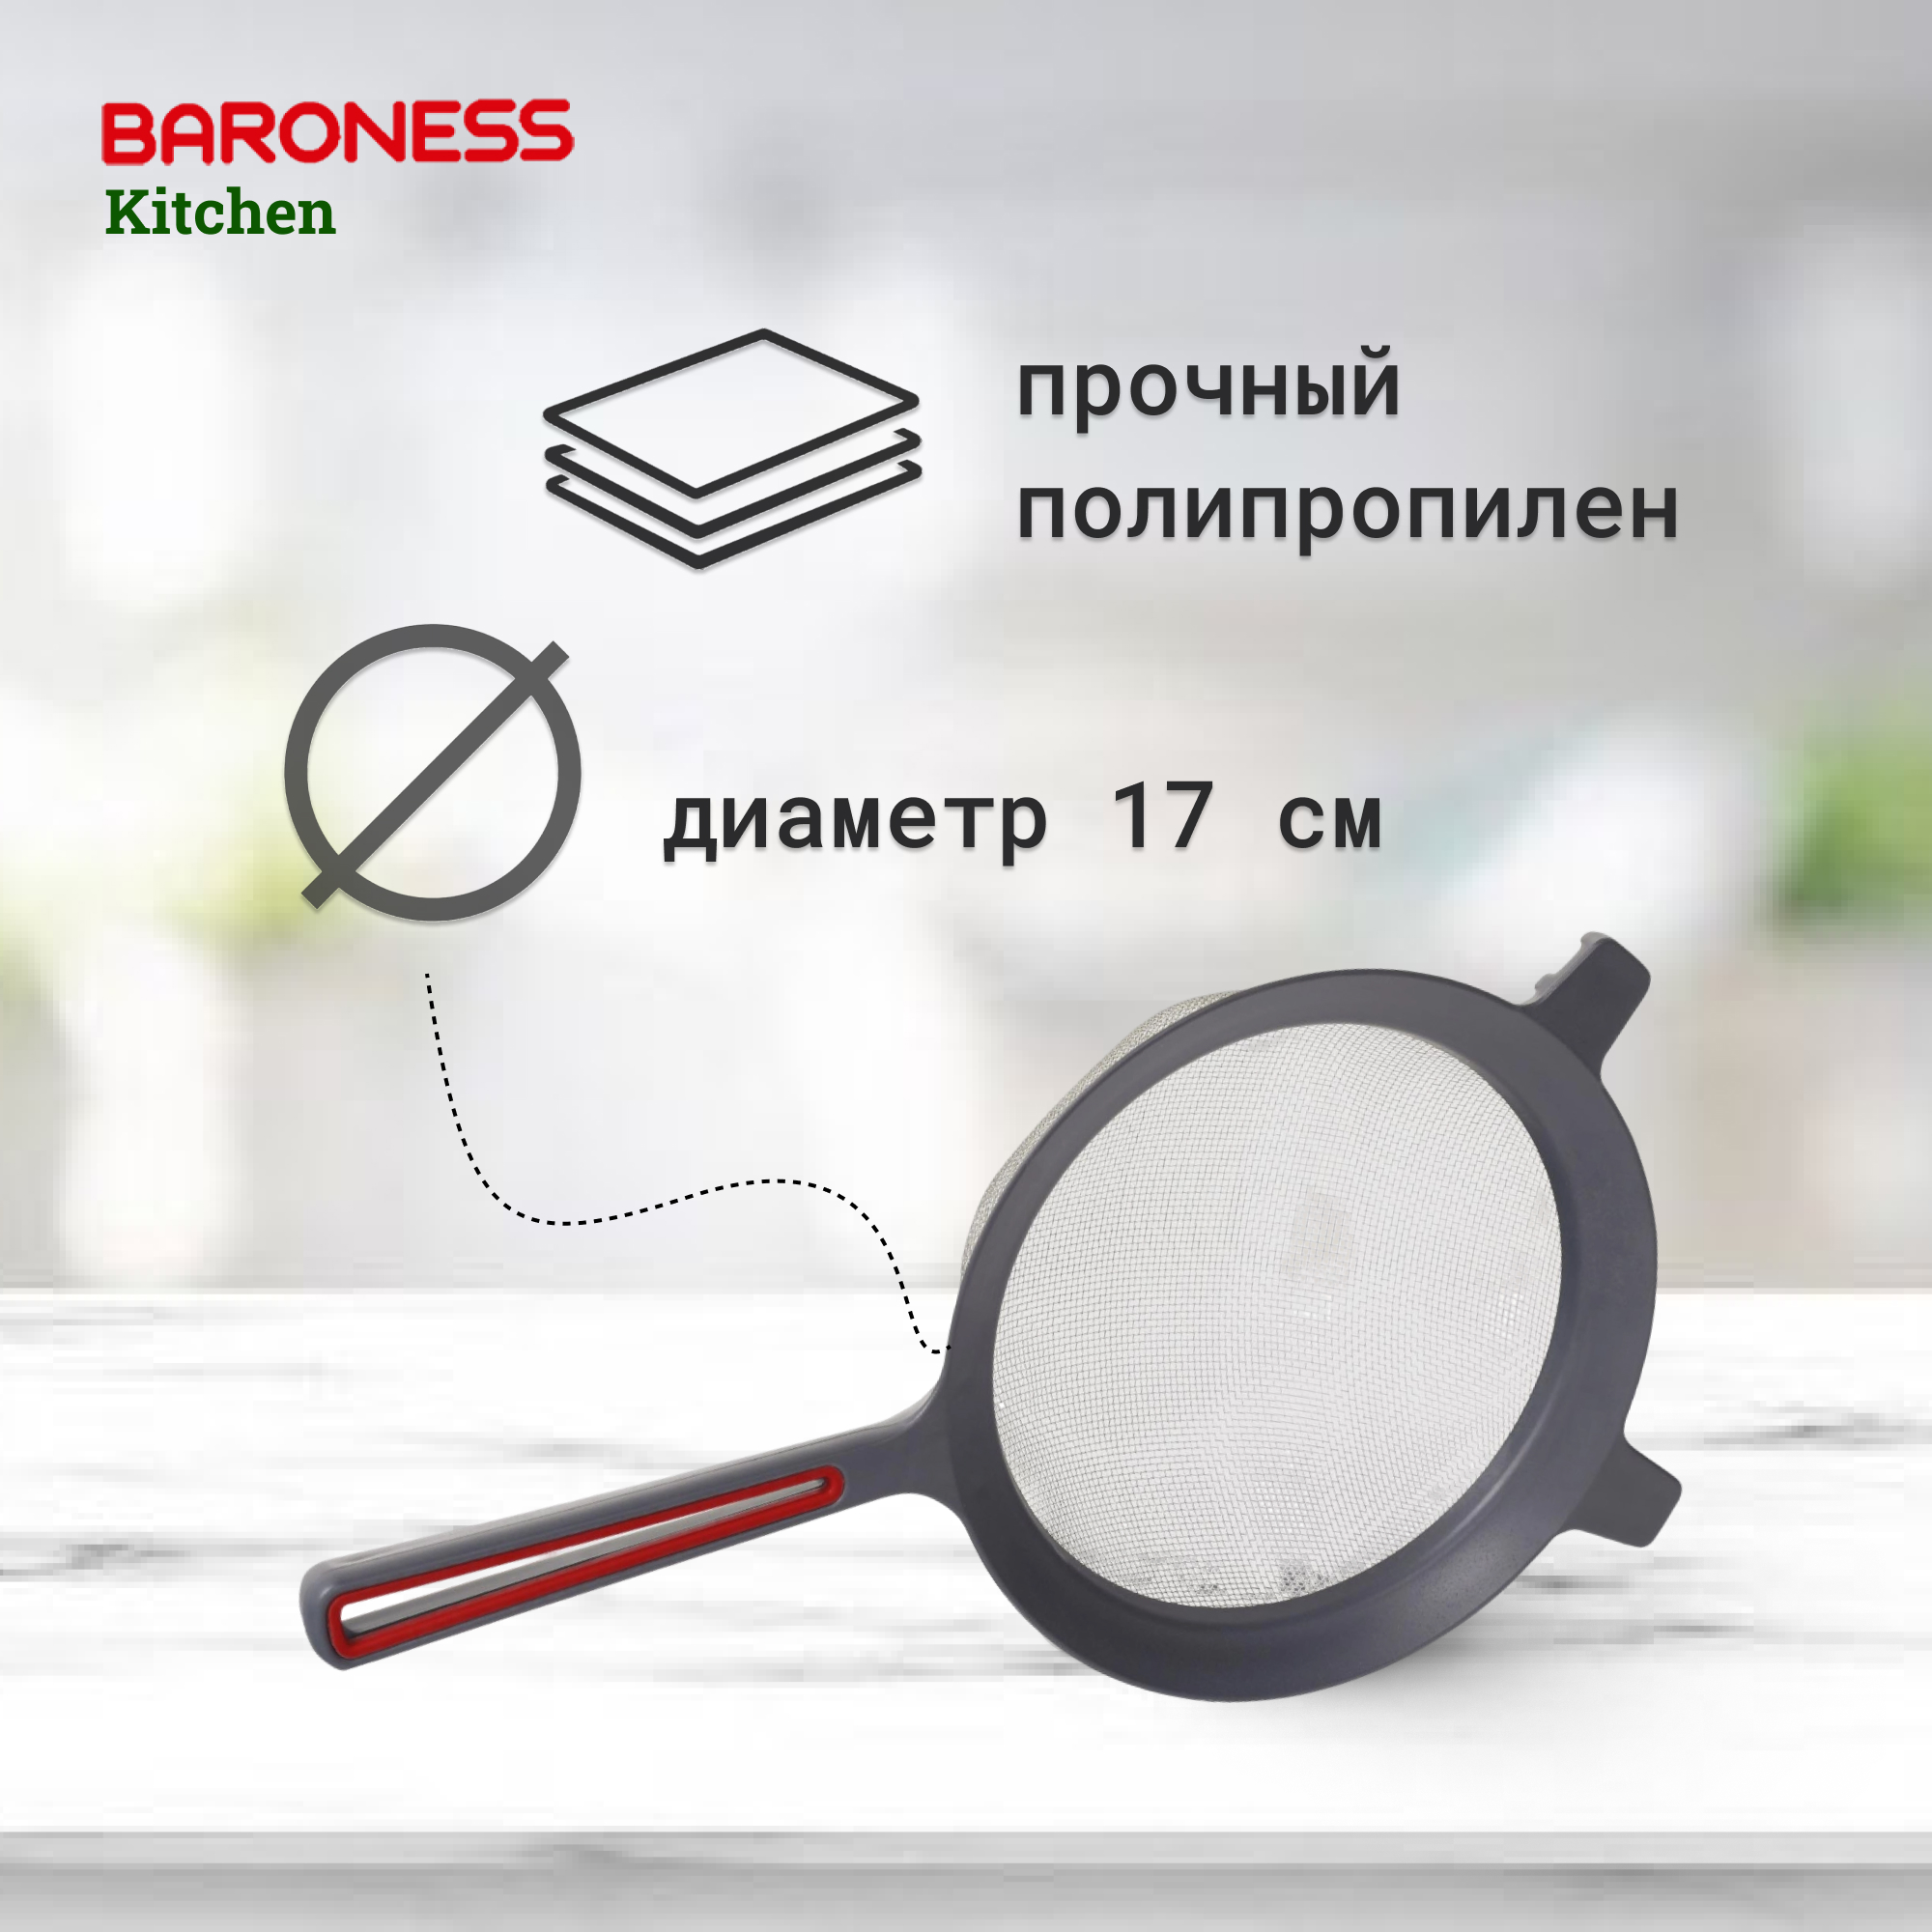 Дуршлаг Baroness Kitchen средний с ручкой 17 см в ассортименте, цвет серый - фото 3